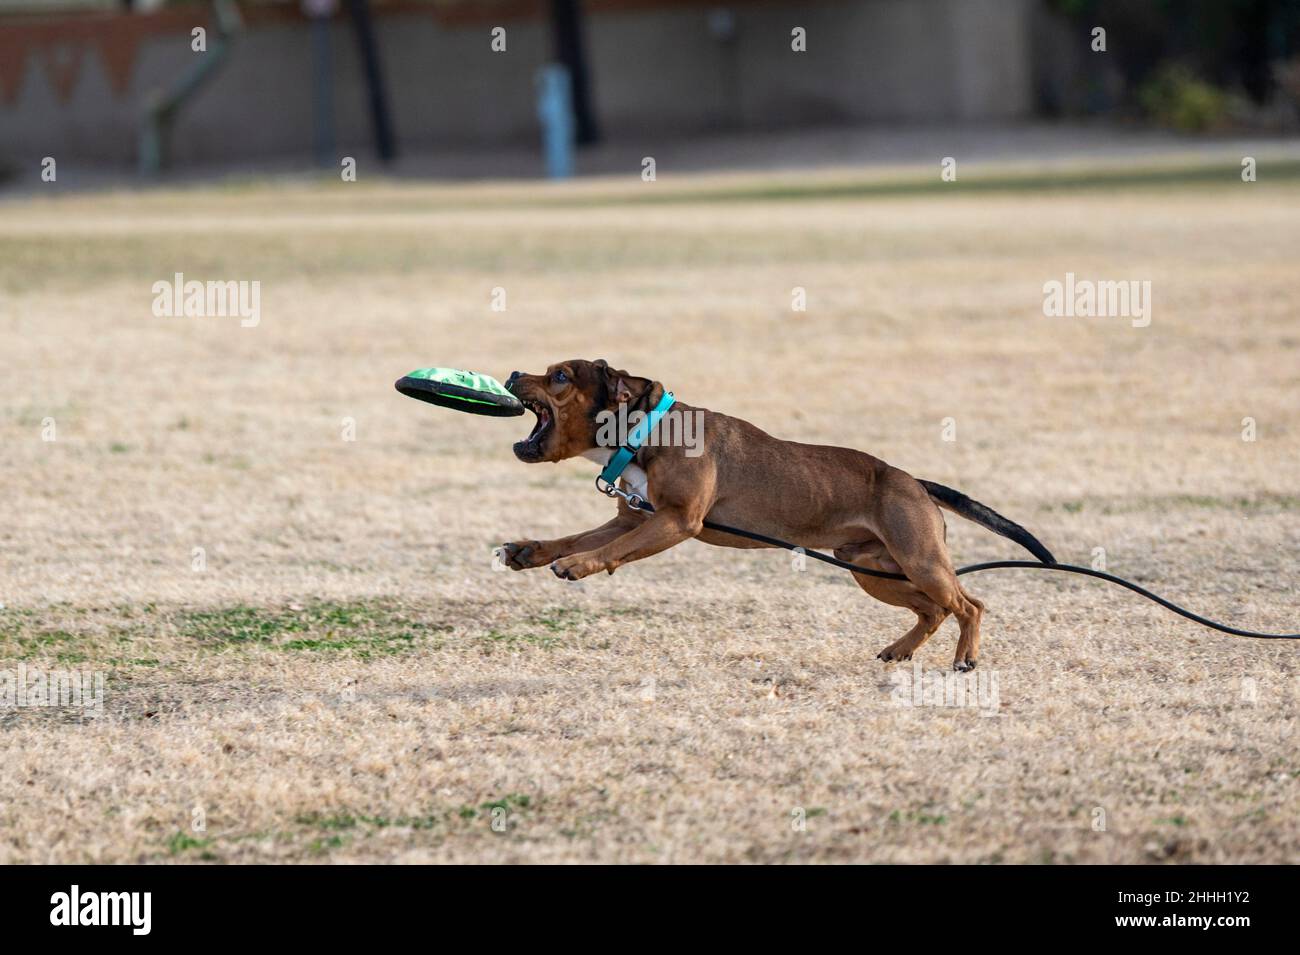 Beim Abspielen einer Disc im Park fängt sich der braune Staffordshire Terrier das Spielzeug an Stockfoto